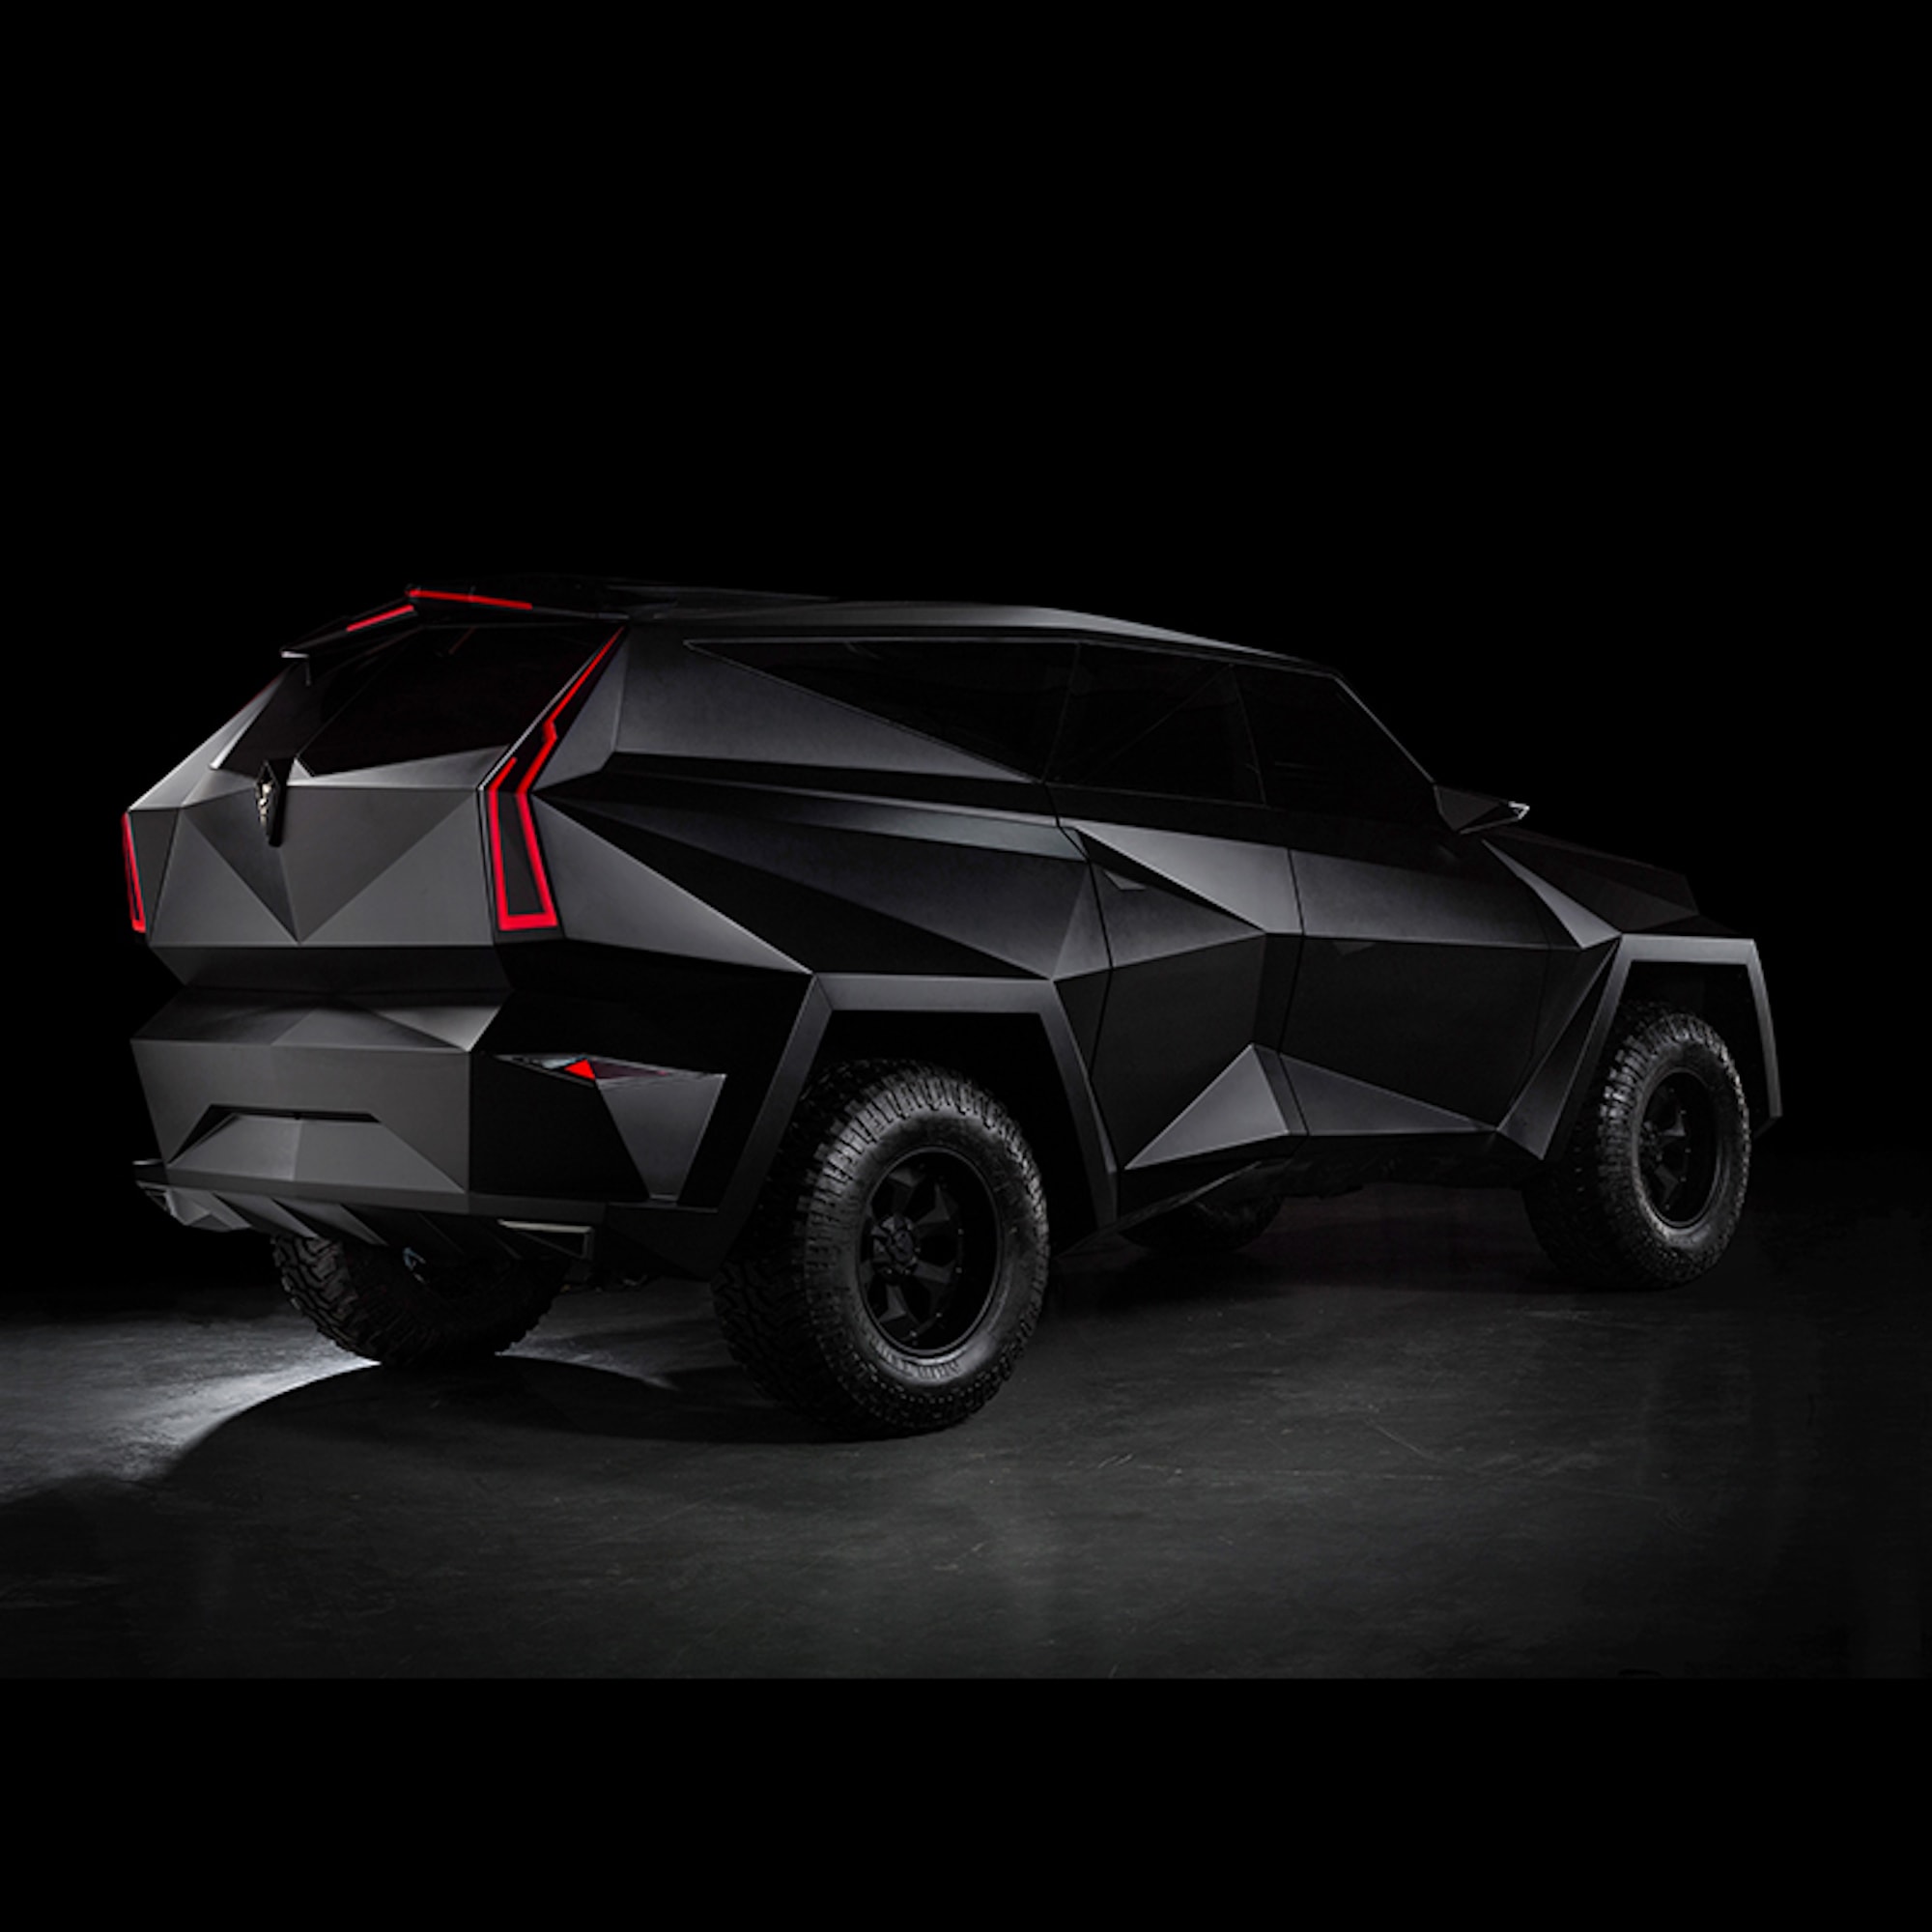 SUV ‘điên rồ’ và đắt nhất thế giới này vẫn có người mua: Bằng 4 chiếc Cullinan, thiết kế như xe Batman, một option giá hơn 7,4 tỷ- Ảnh 2.